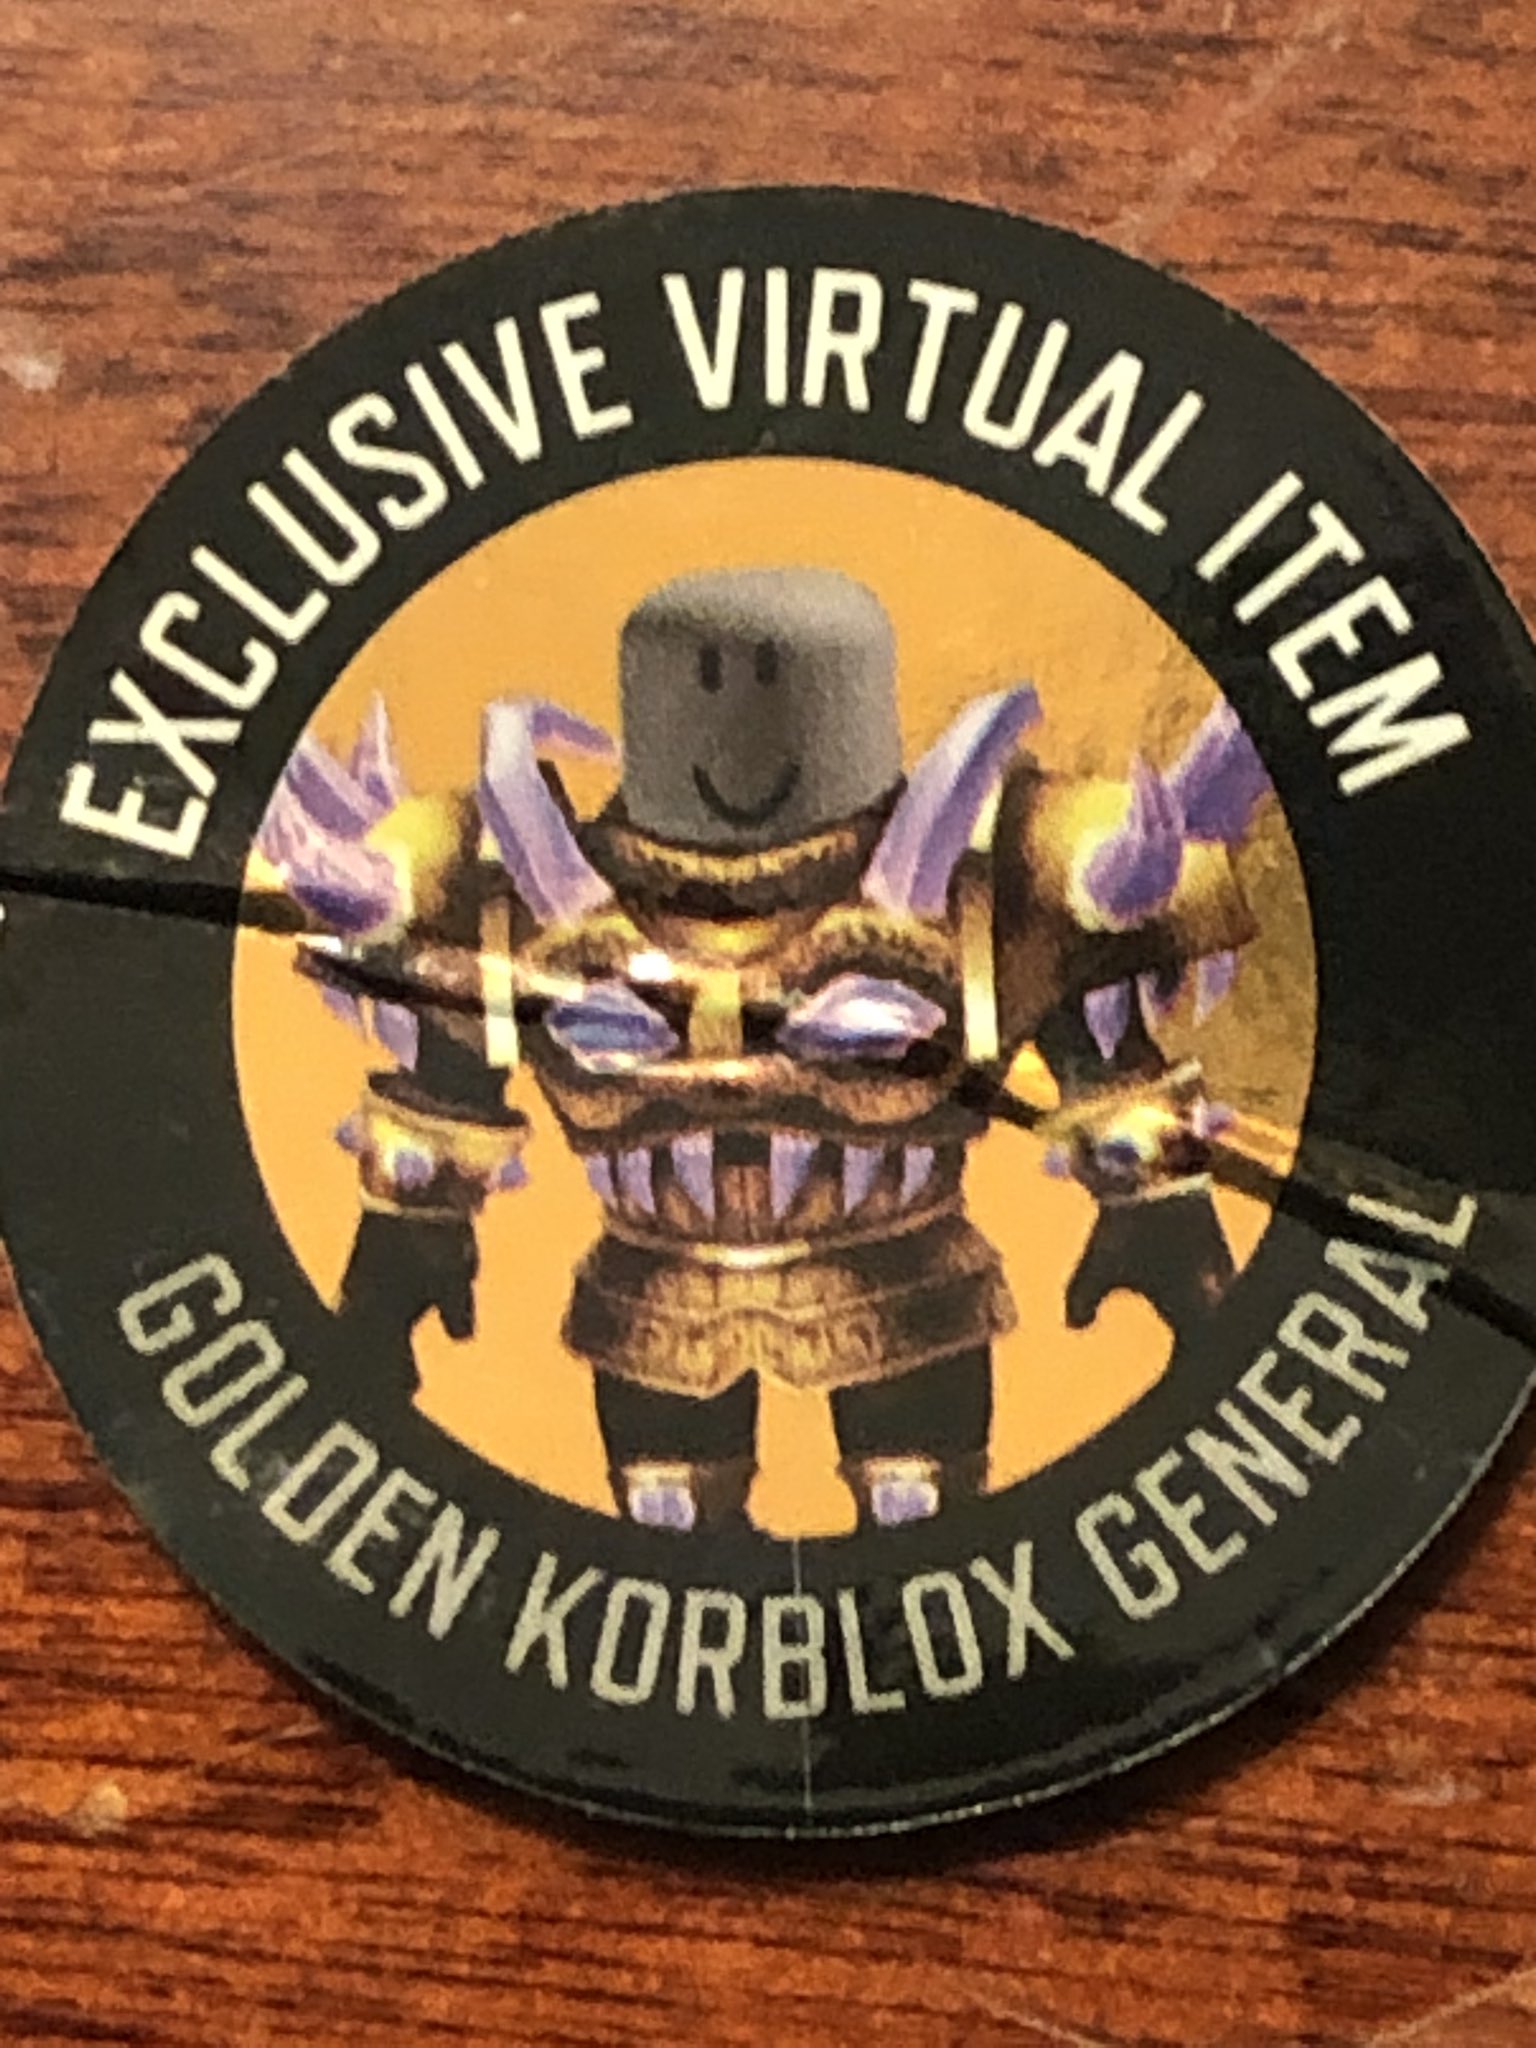 Golden Korblox General - Roblox